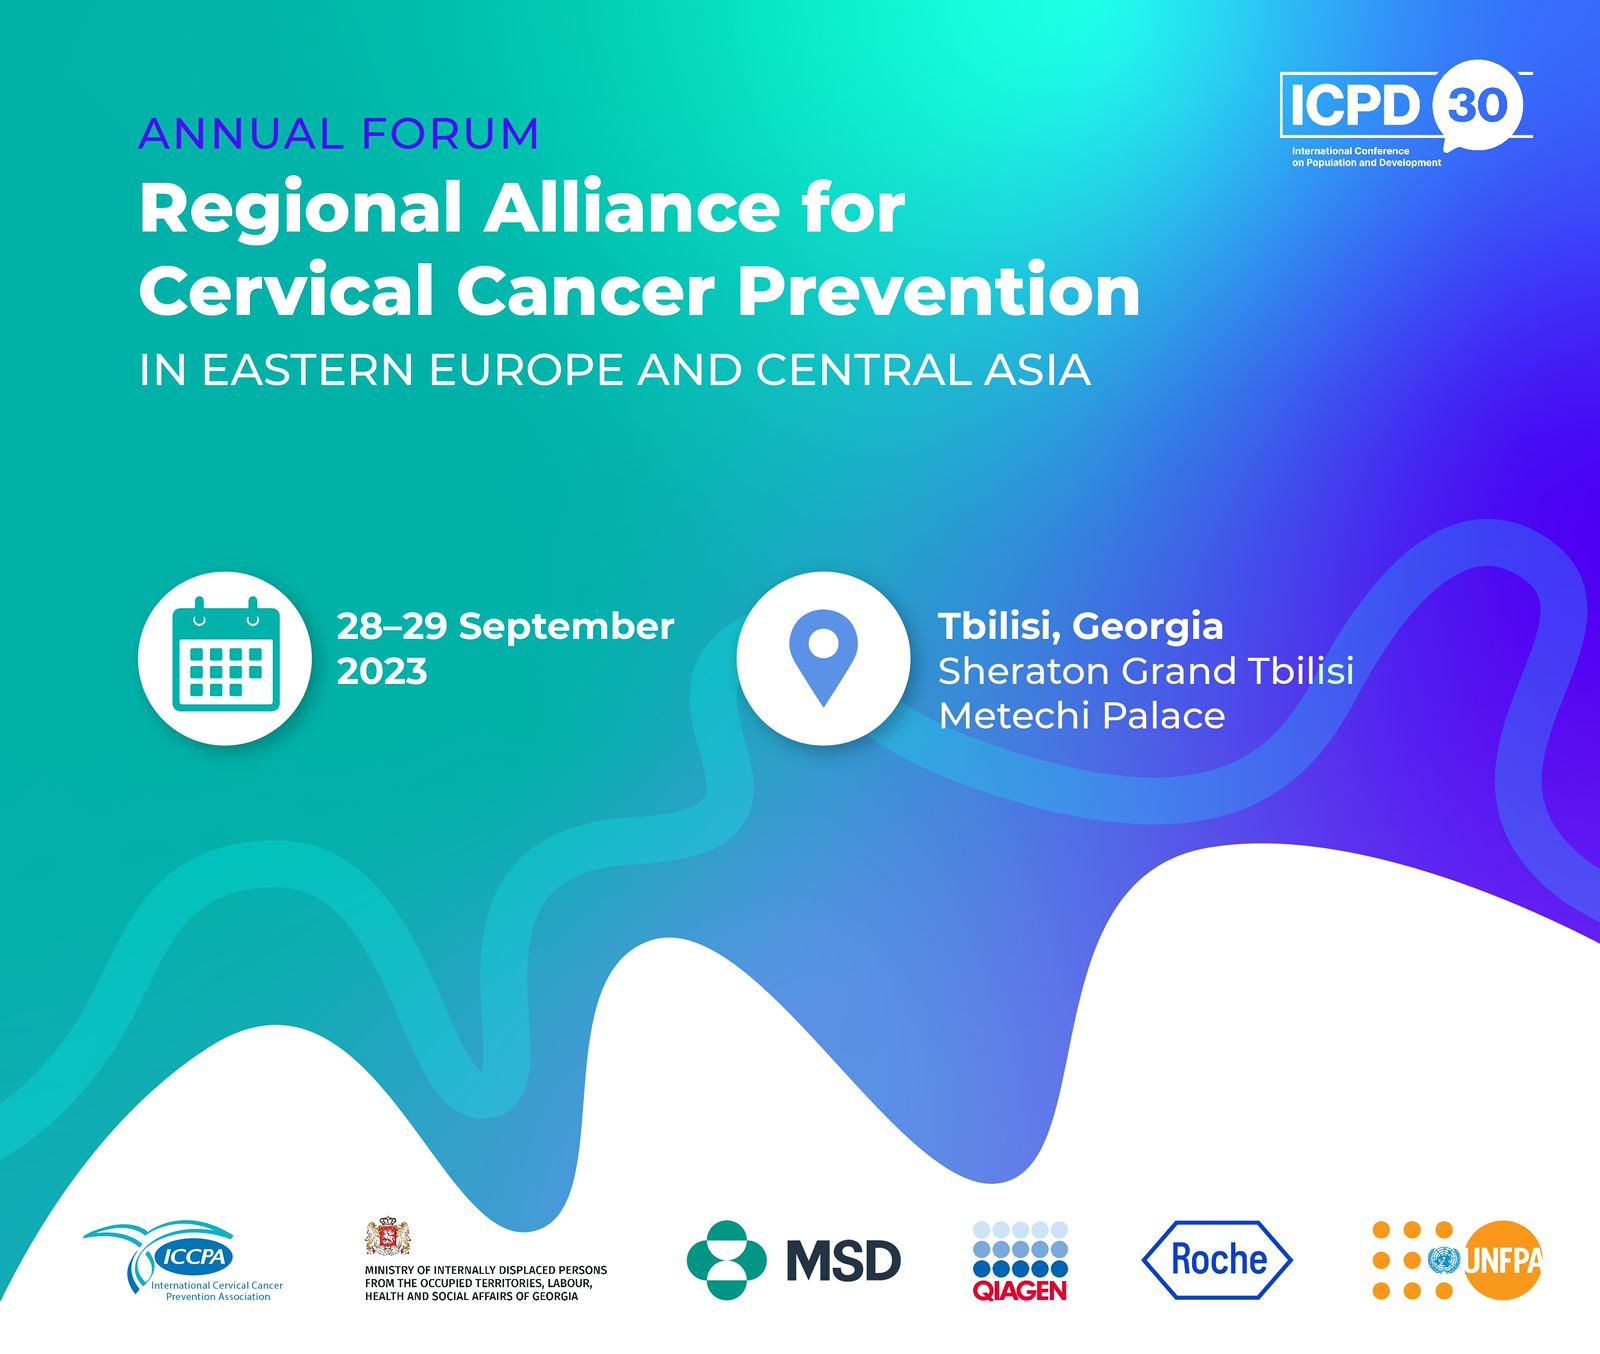 28-29 сентября 2023 года в городе Тбилиси  (Грузия) проходит Форум Регионального Альянса по профилактике рака шейки матки в странах Восточной Европы и Центральной Азии.